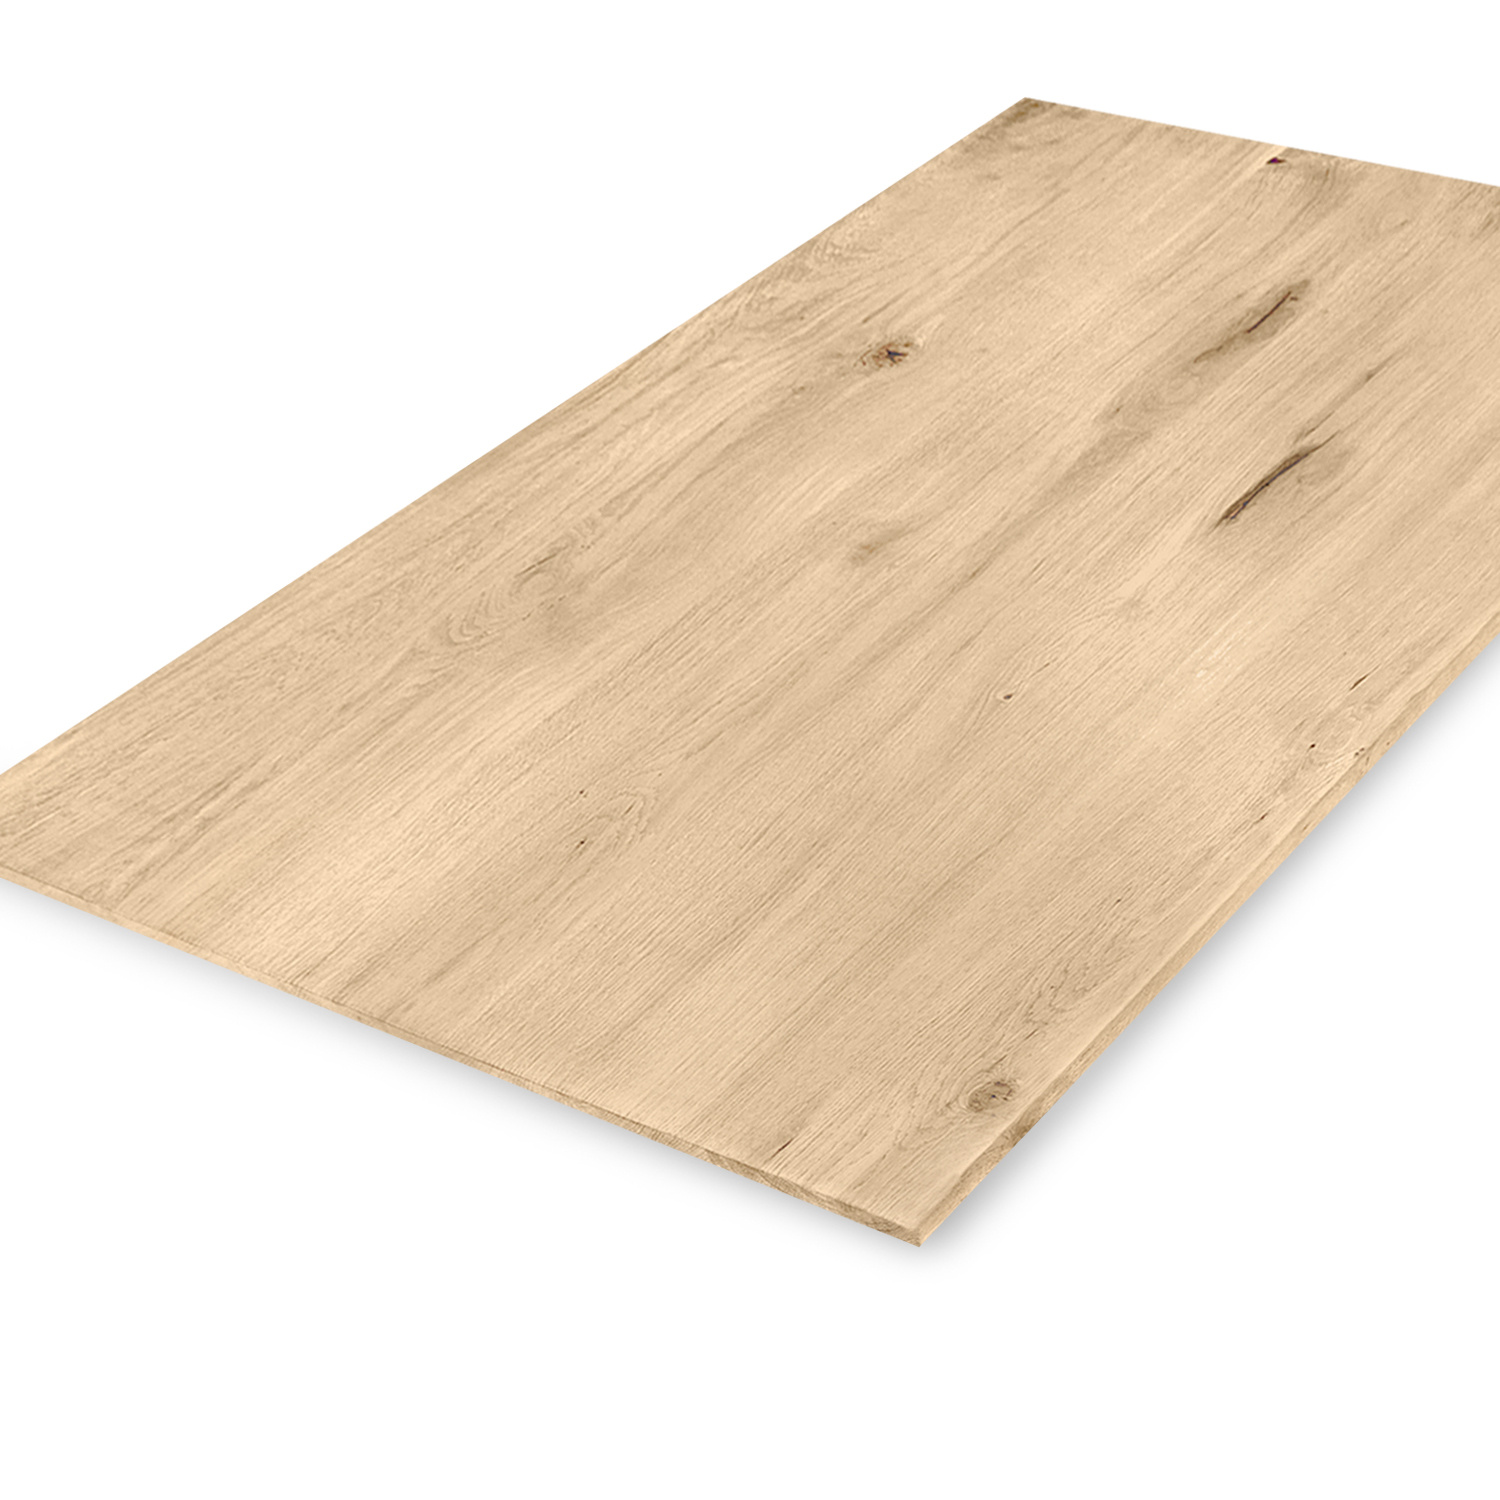  Tischplatte Wildeiche - Schweizer Kante - nach Maß - 3 cm dick (1-Schicht) - XXL Lamellen (14-20 cm breit) - Asteiche (rustikal) - verleimt & künstlich getrocknet (HF 8-12%) - 40-117x80-247 cm